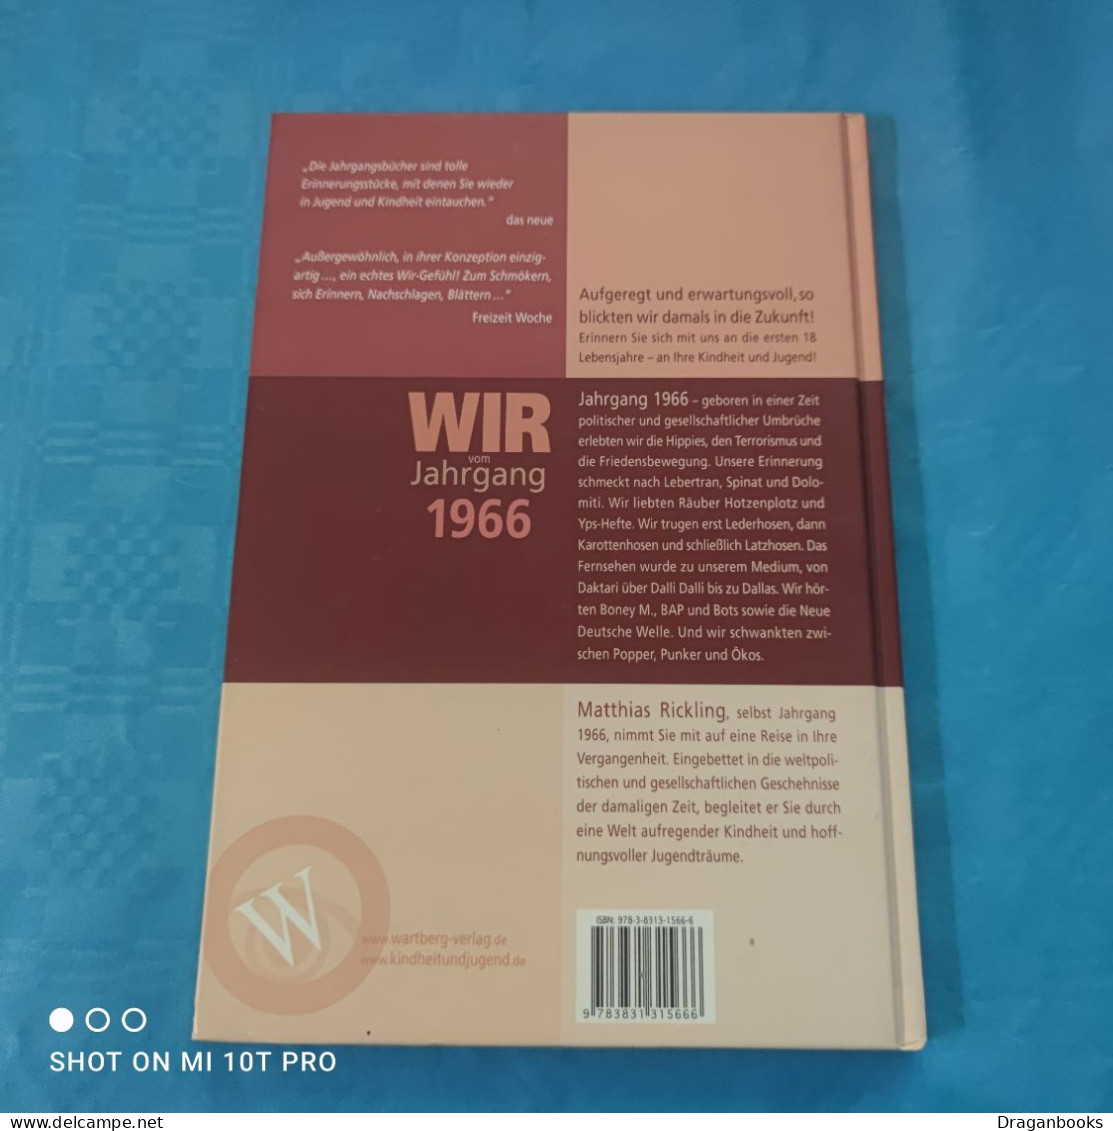 Matthias Rickling - Wir Vom Jahrgang 1966 - Chroniques & Annuaires